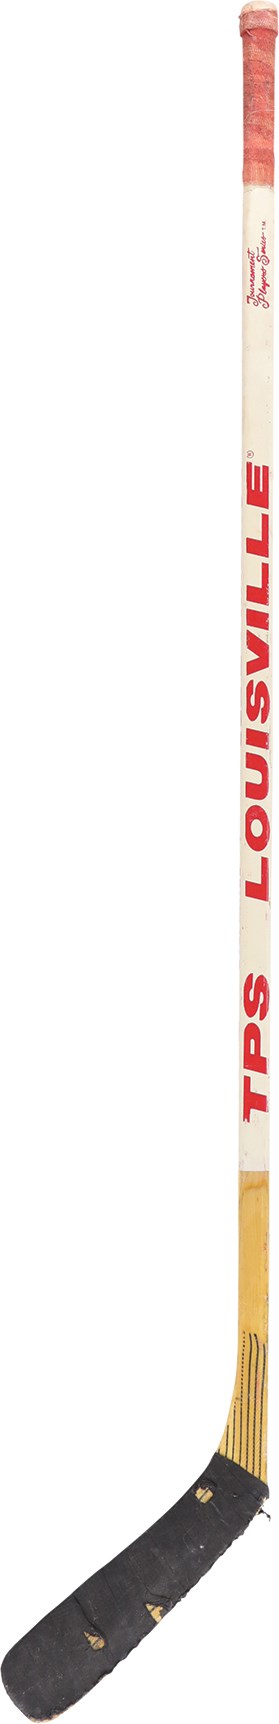 Hockey - 1989 Steve Yzerman Detroit Red Wings Game Used Stick